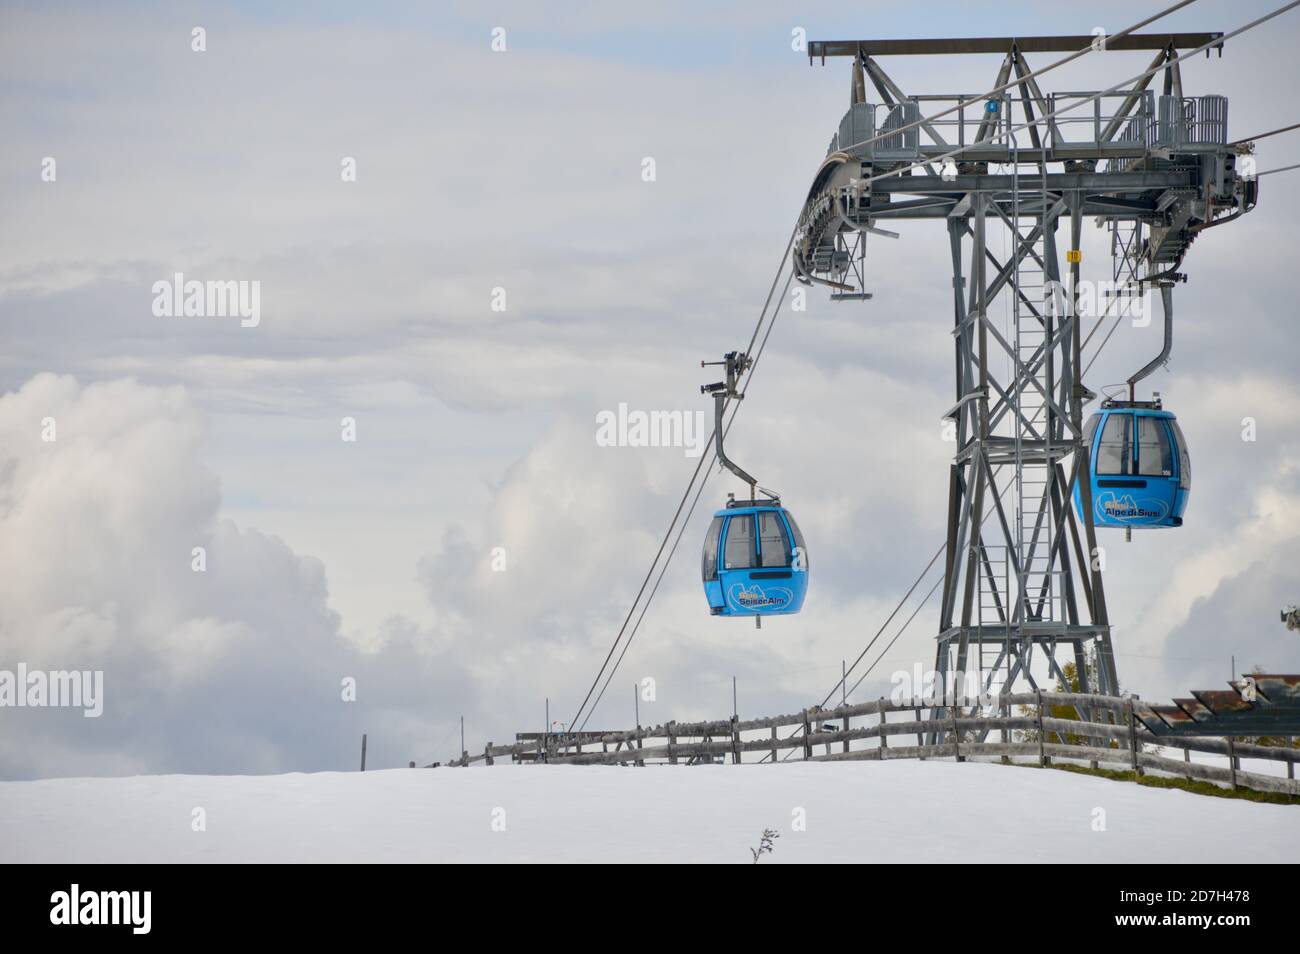 2 blaue Gondeln der Seiser Alm Bahn vor der Stütze gegen den wolkenverhangenen Himmel Stock Photo